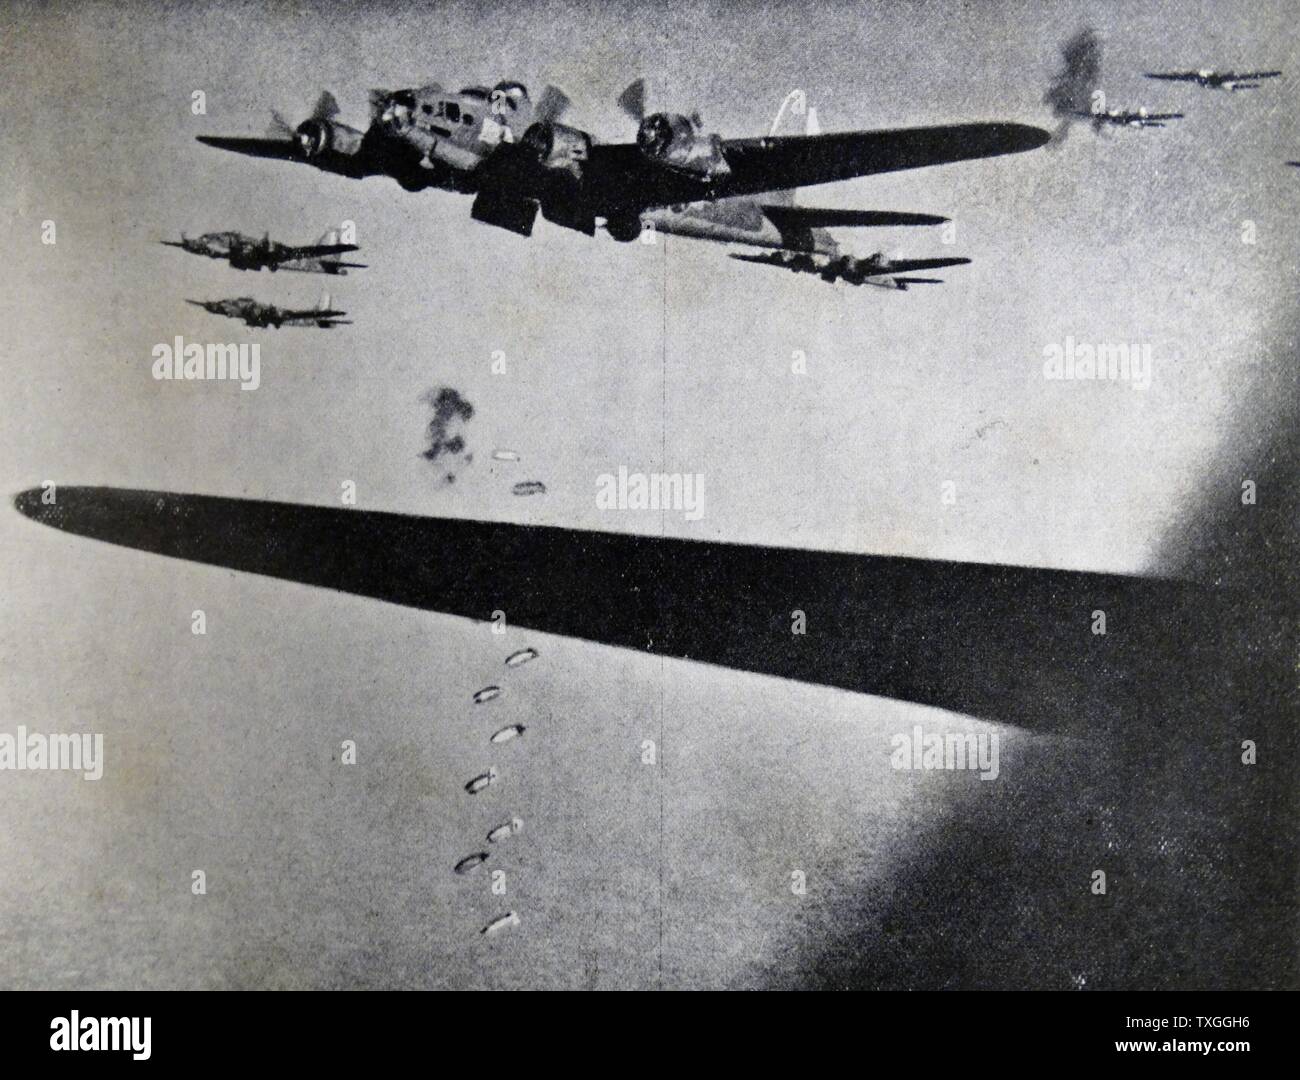 Photographie de Boeing B-17 Flying forteresses des bombes pendant la Seconde Guerre mondiale. Datée 1941 Banque D'Images